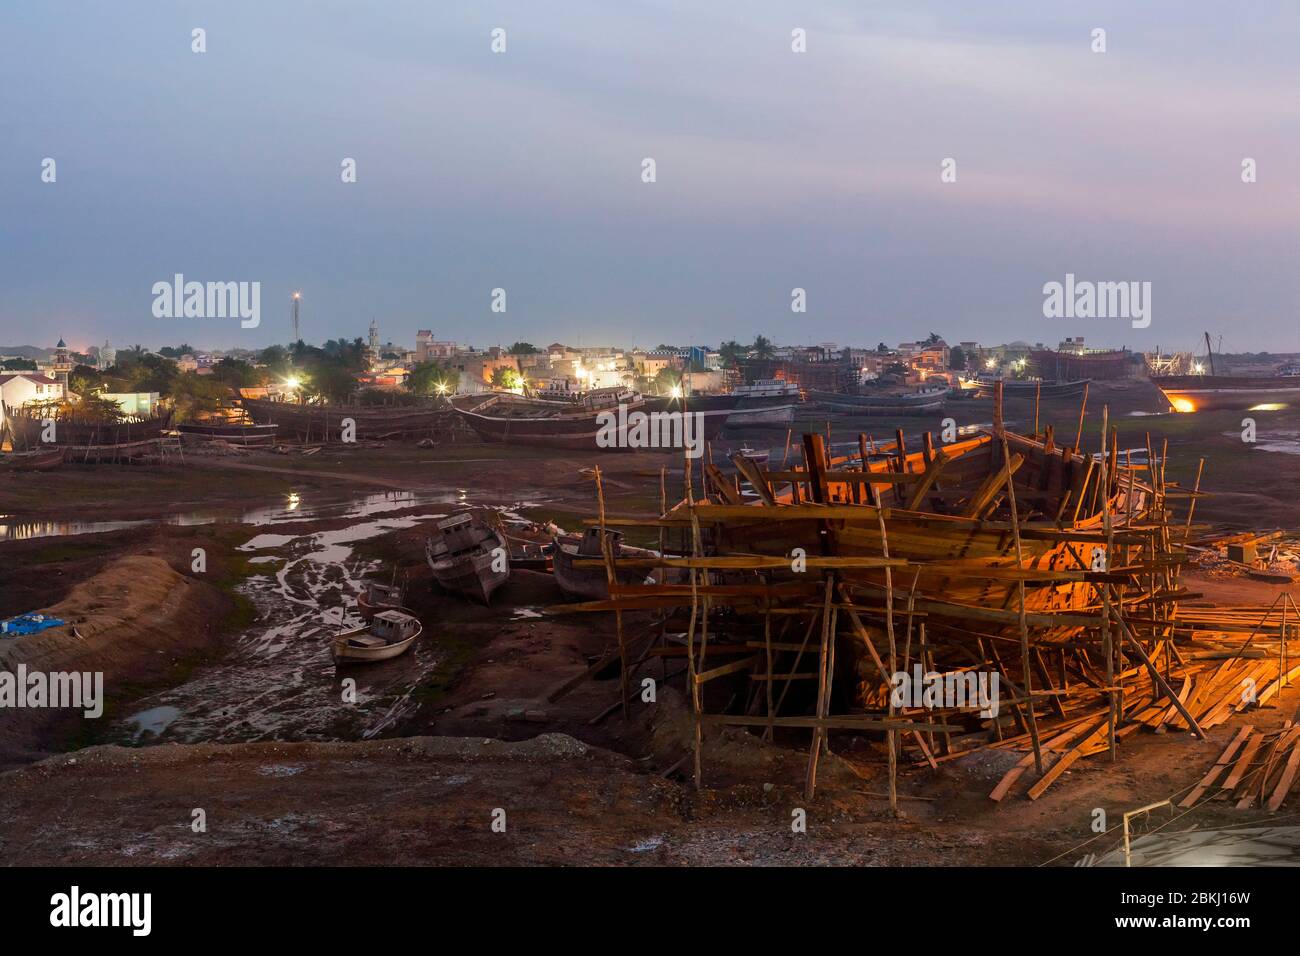 Indien, Gujarat Staat, Mandvi, Werften, erhöhte Ansicht bei Nacht auf einer Dhow im Bau Stockfoto